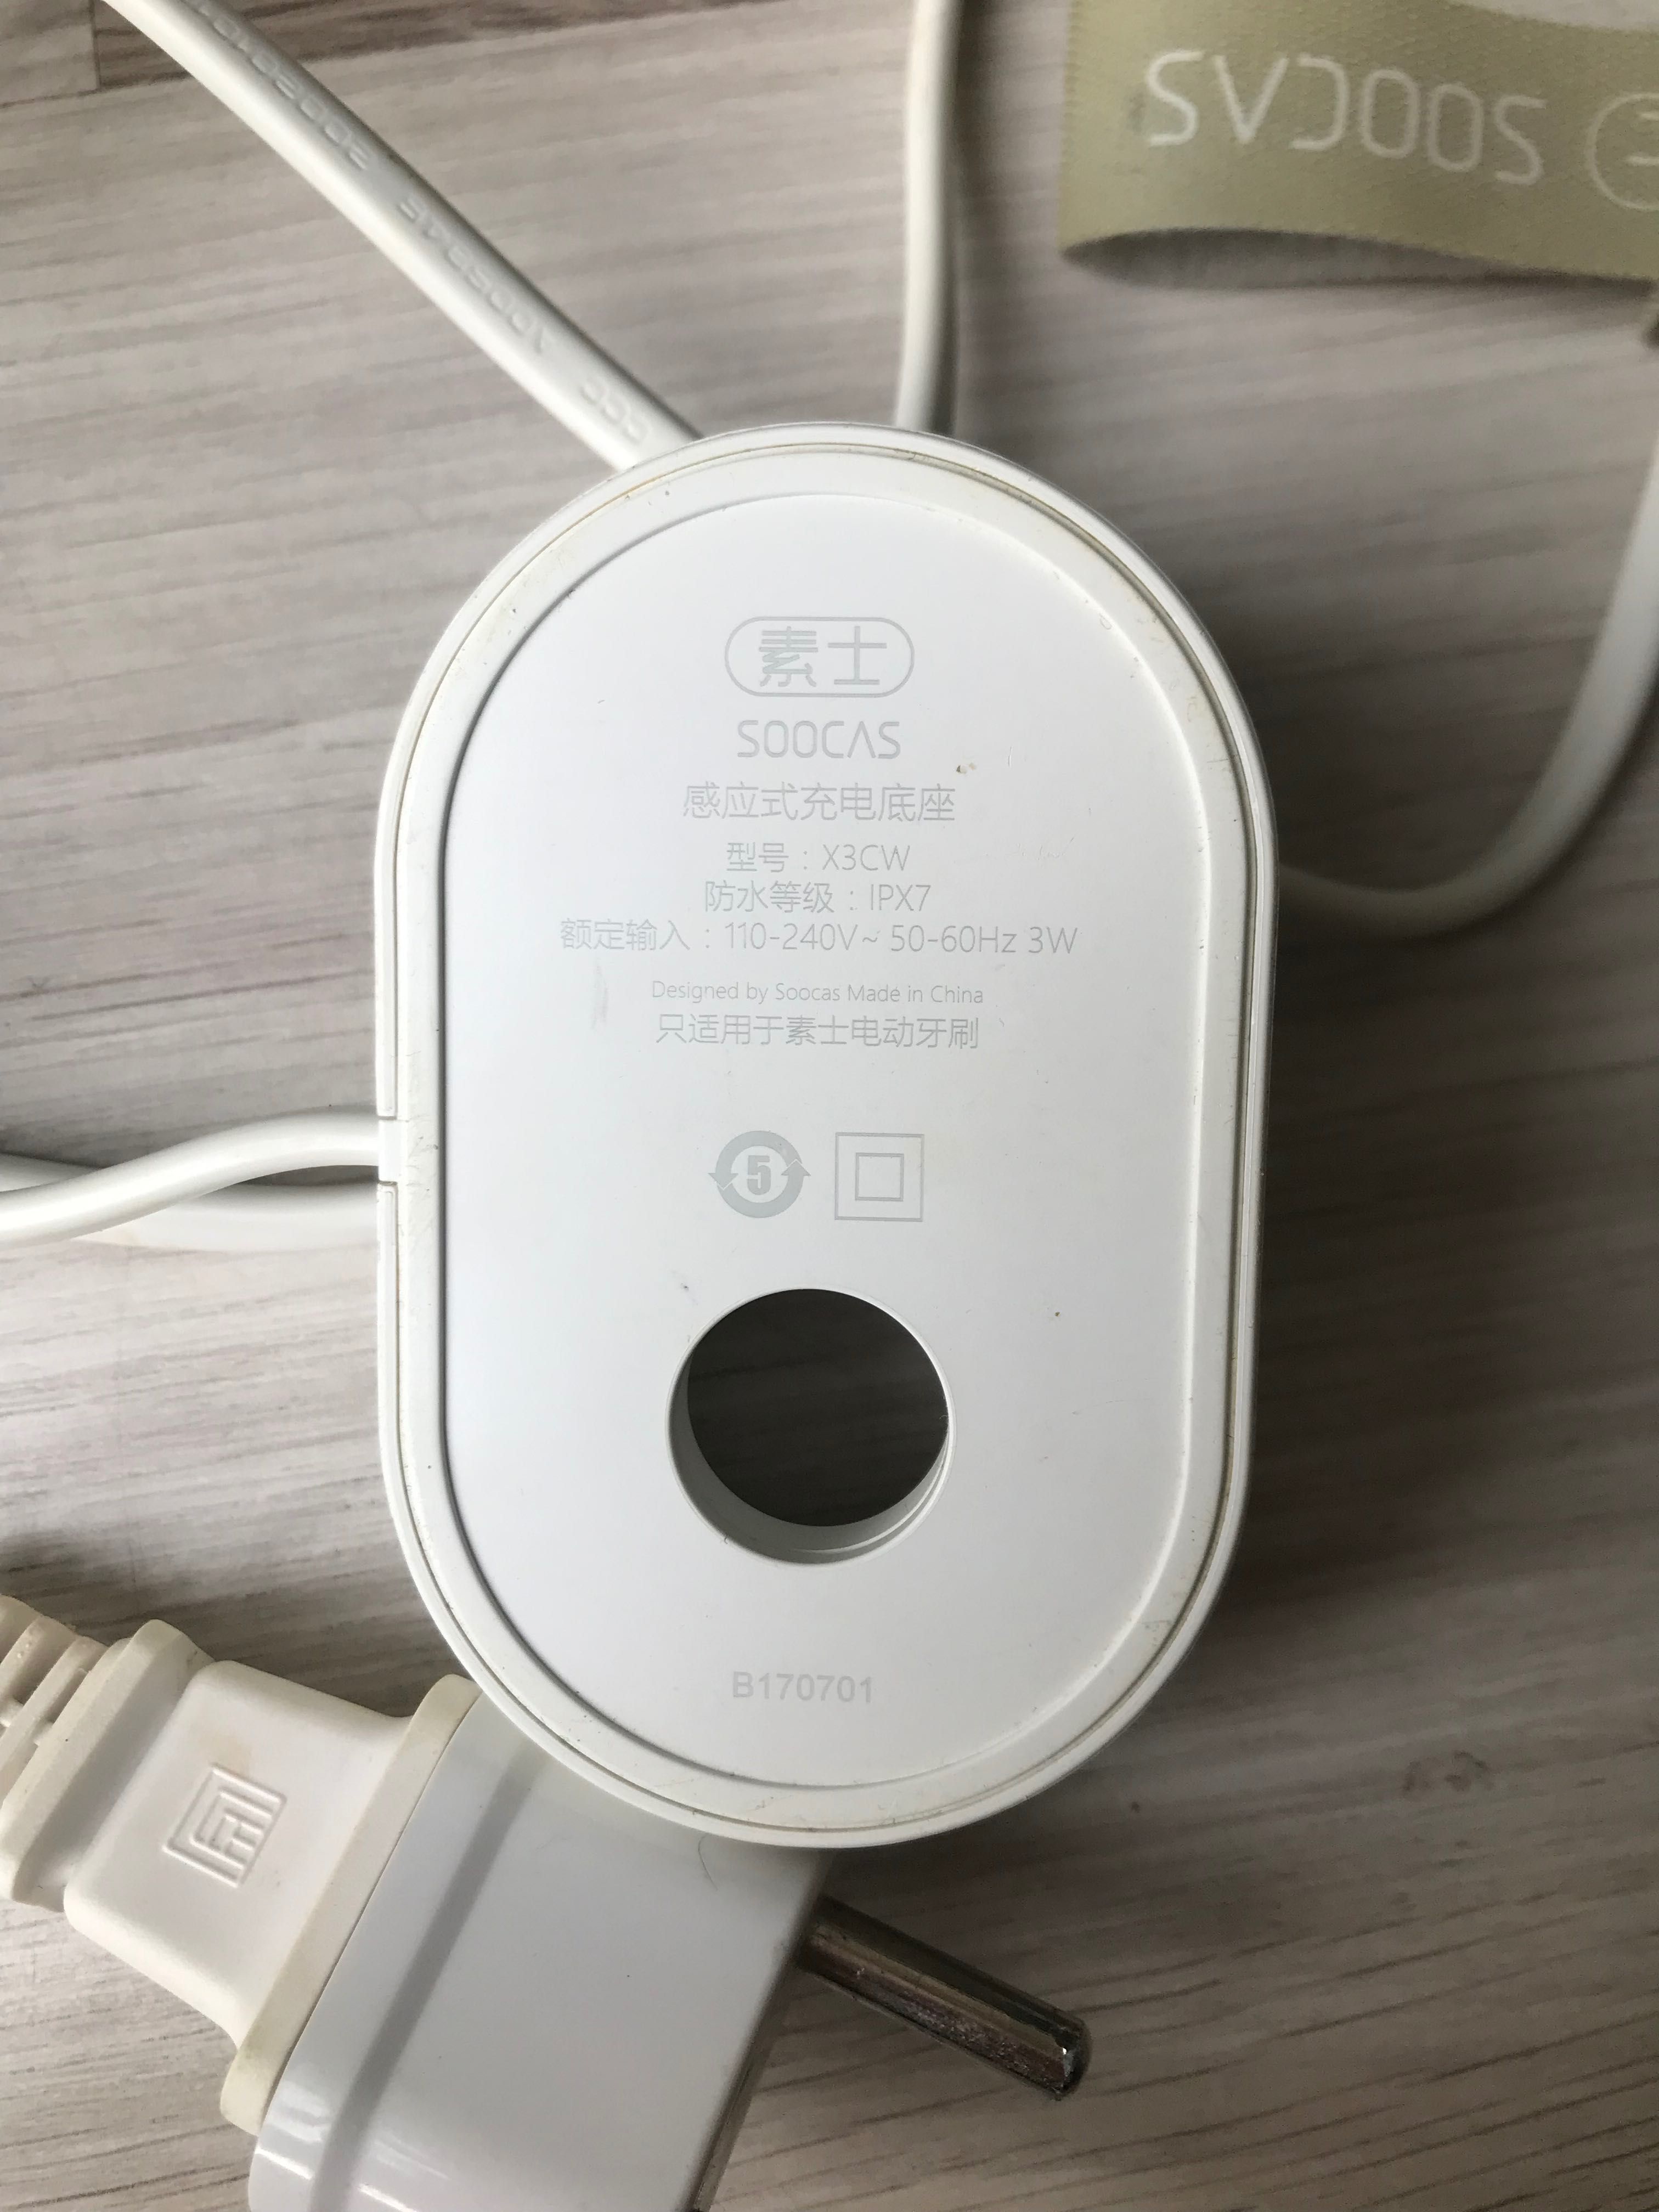 Soniczna szczoteczka elektryczna marki Xiaomi - Soocas X3